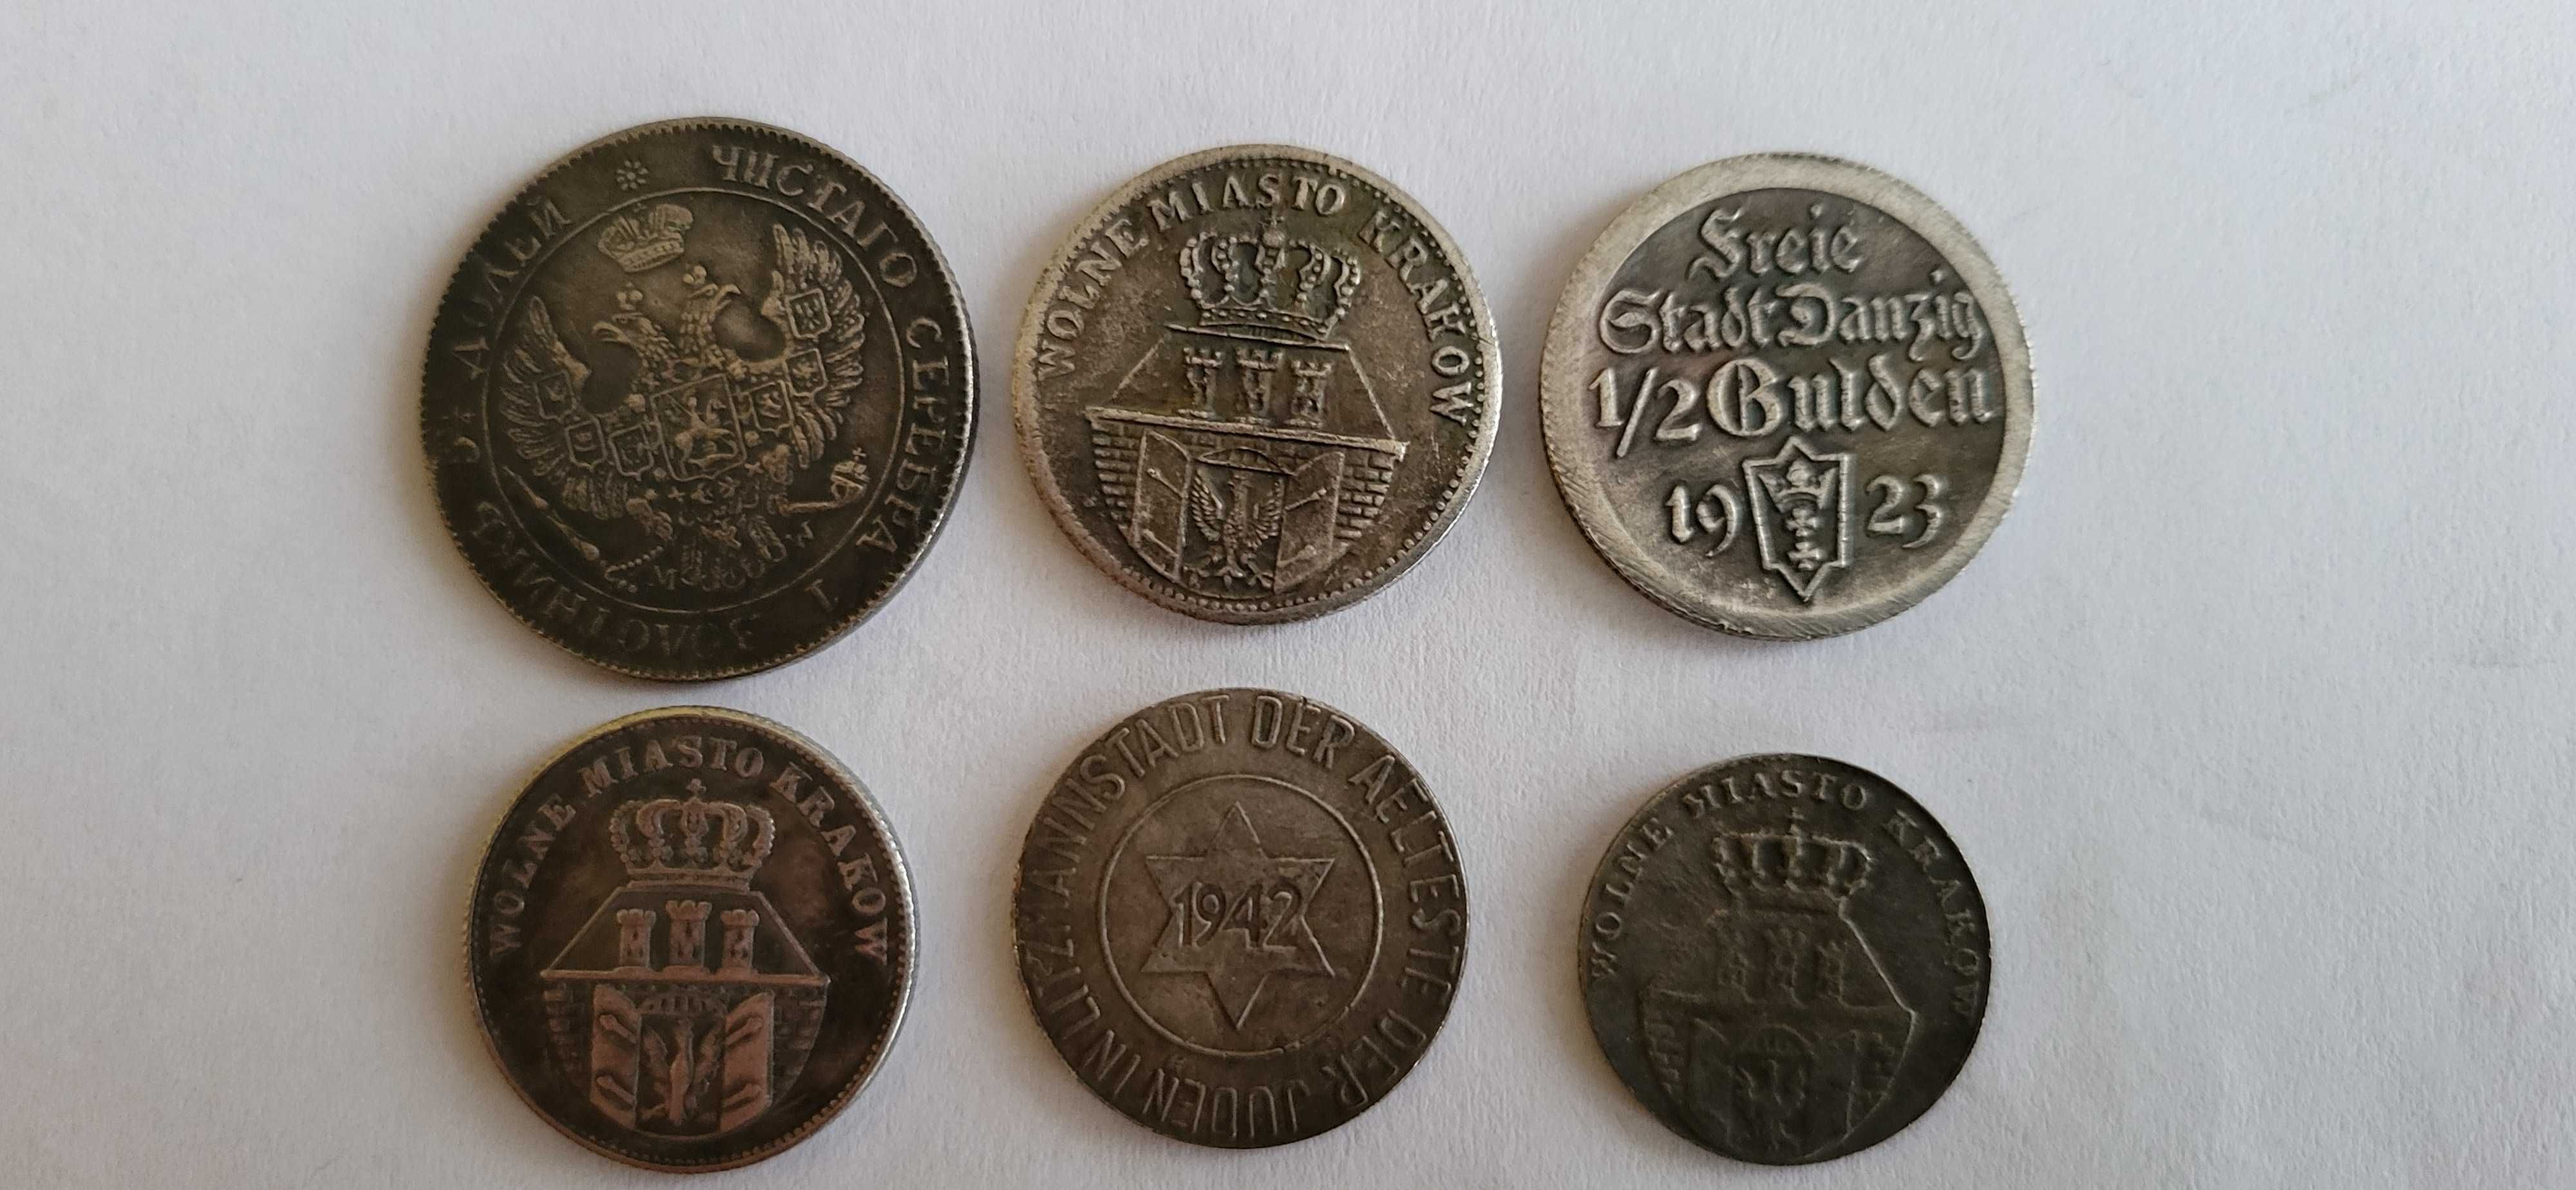 Kolekcja starych polskich monet